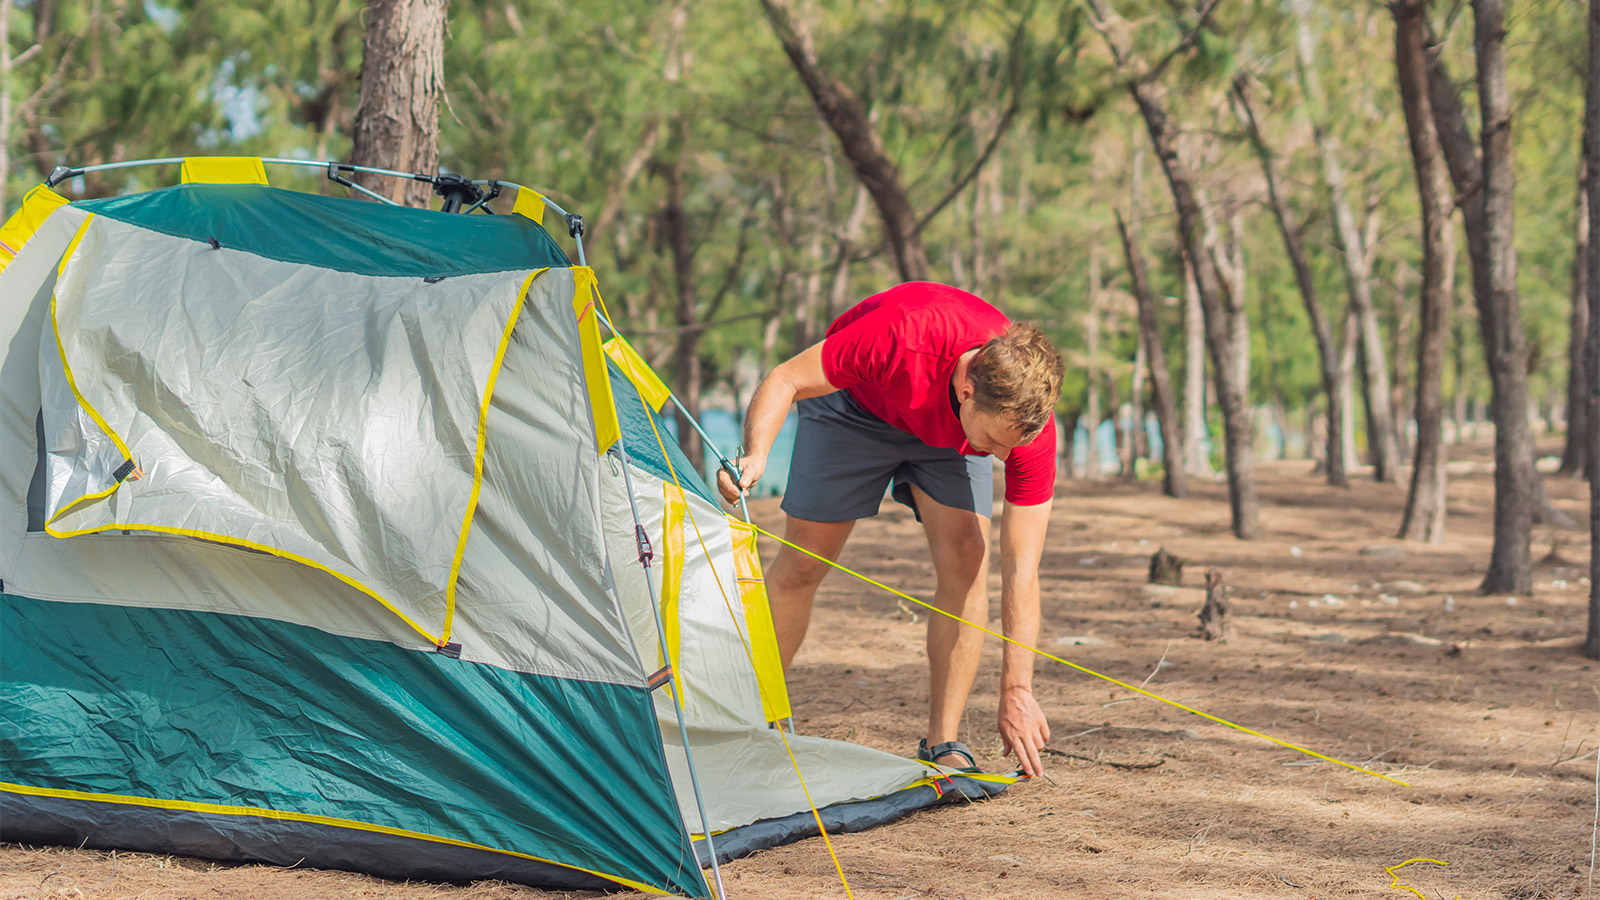 Легкая палатка из силнейлона своими руками: комфортная версия